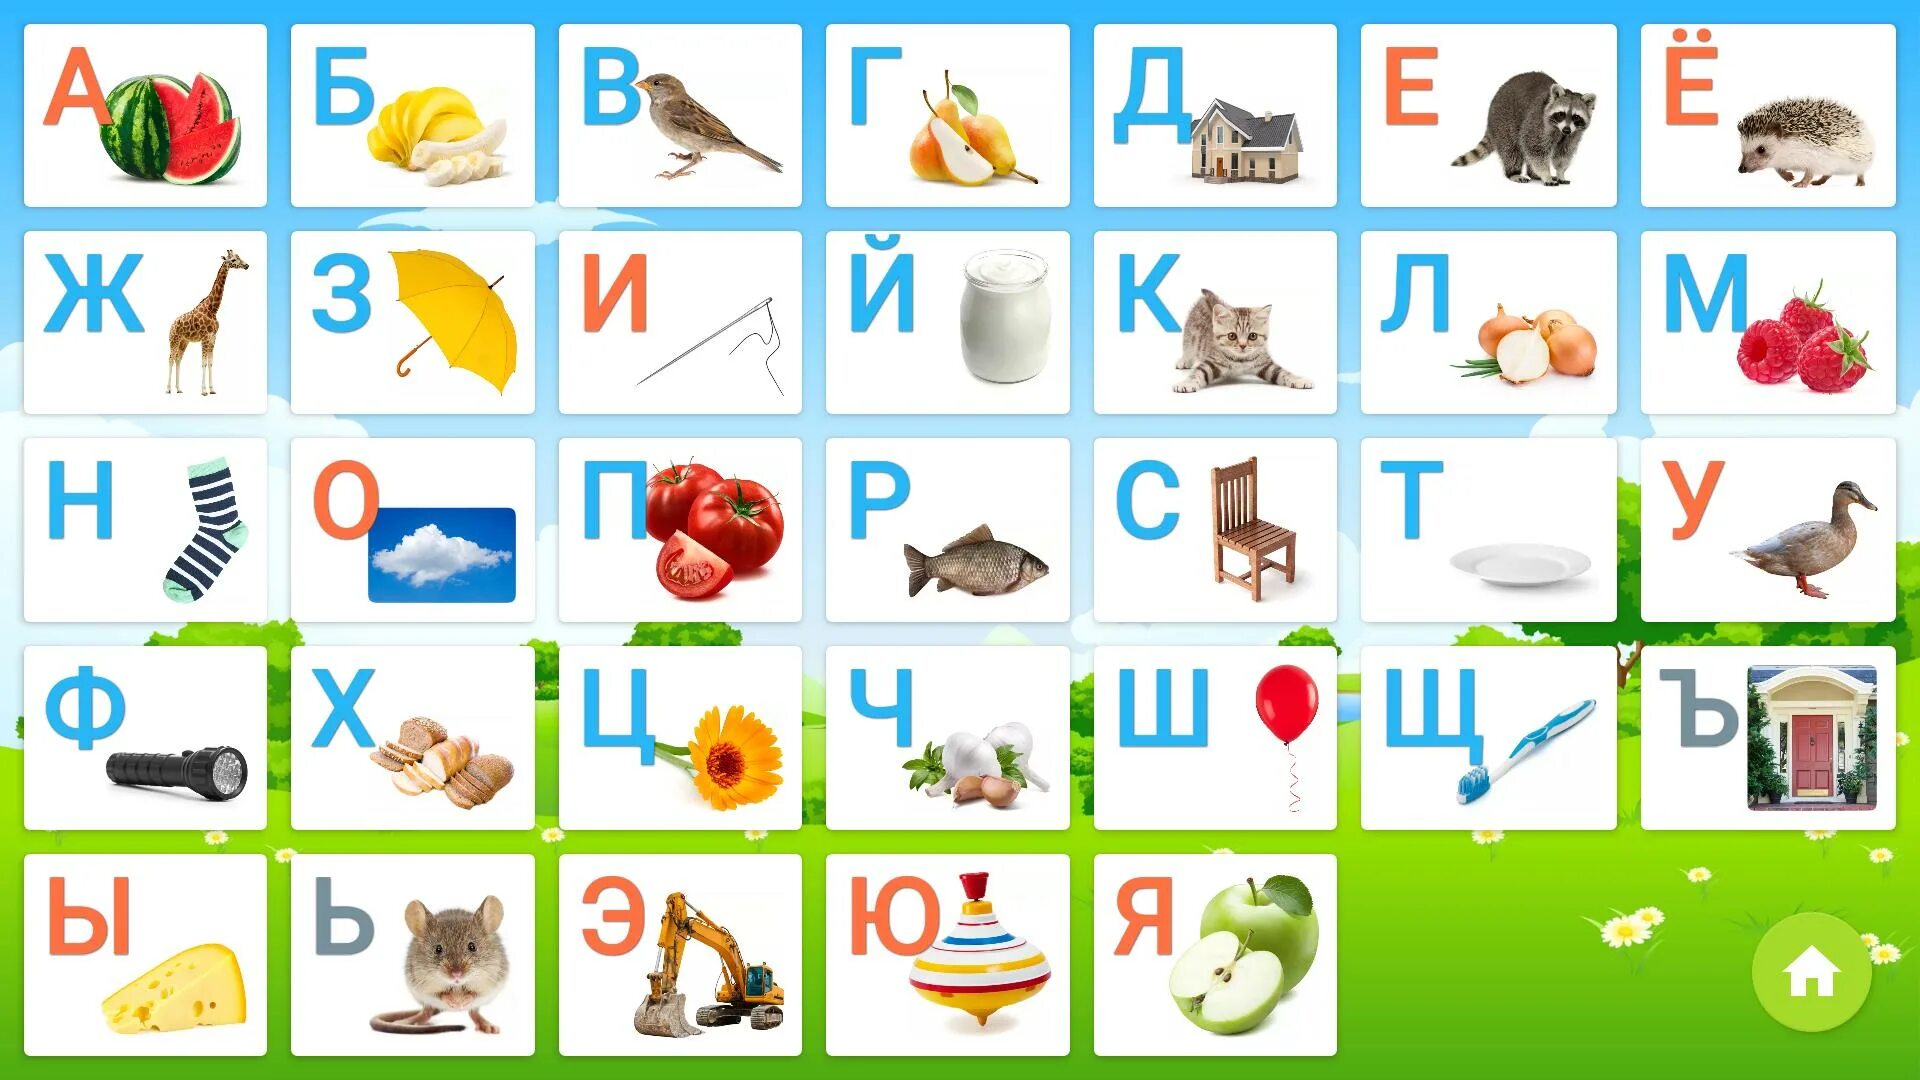 Азбука для детей 4 года игра. Алфавит для дошкольников. Азбука детская в картинках. Алфавит картинки для детей. Алфавит русский для детей.